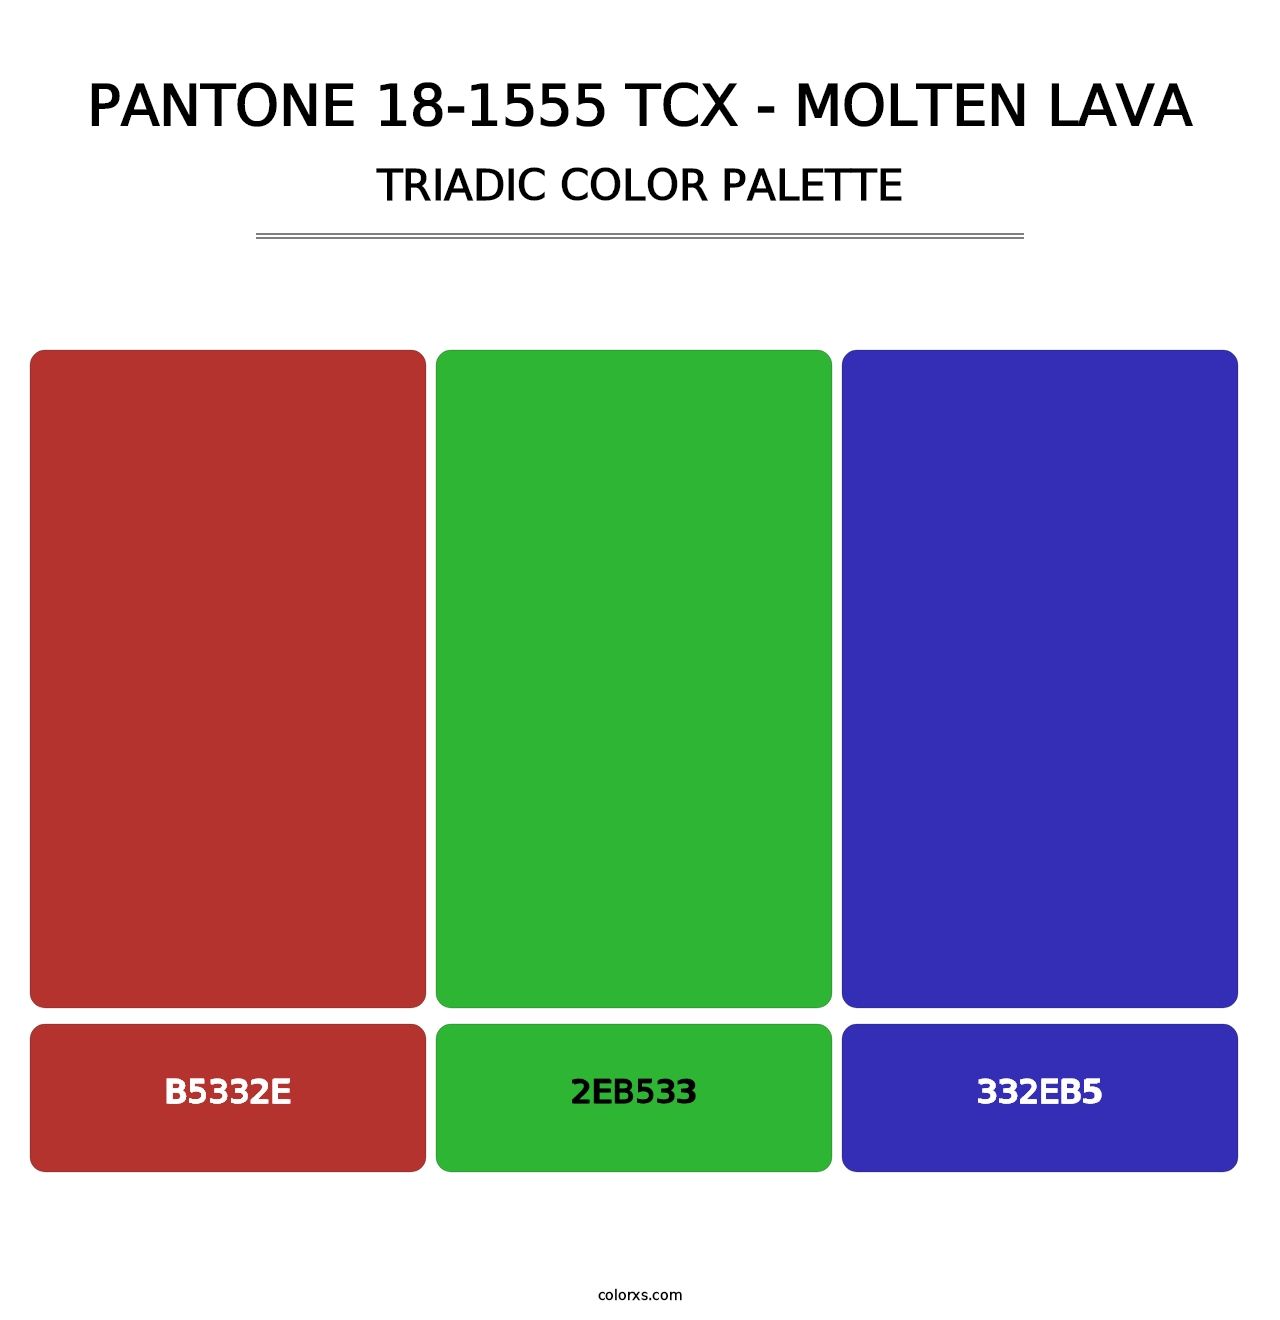 PANTONE 18-1555 TCX - Molten Lava - Triadic Color Palette